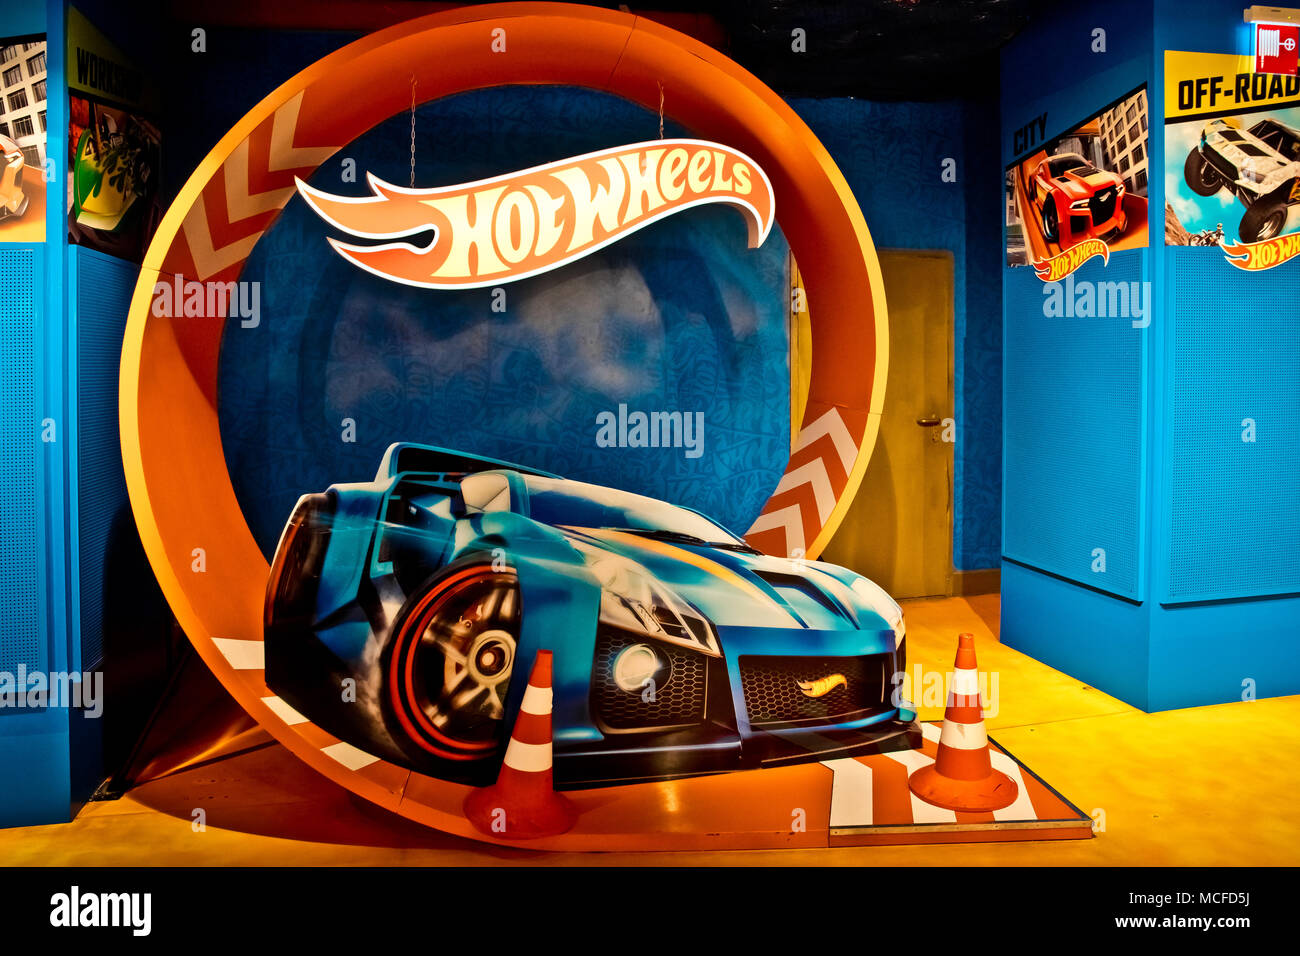 Le Hot Wheels department store in Hamleys shop. Le Hot Wheels è un marchio di scala in pressofusione di automobili giocattolo introdotto dalla American toy maker Mattel Foto Stock